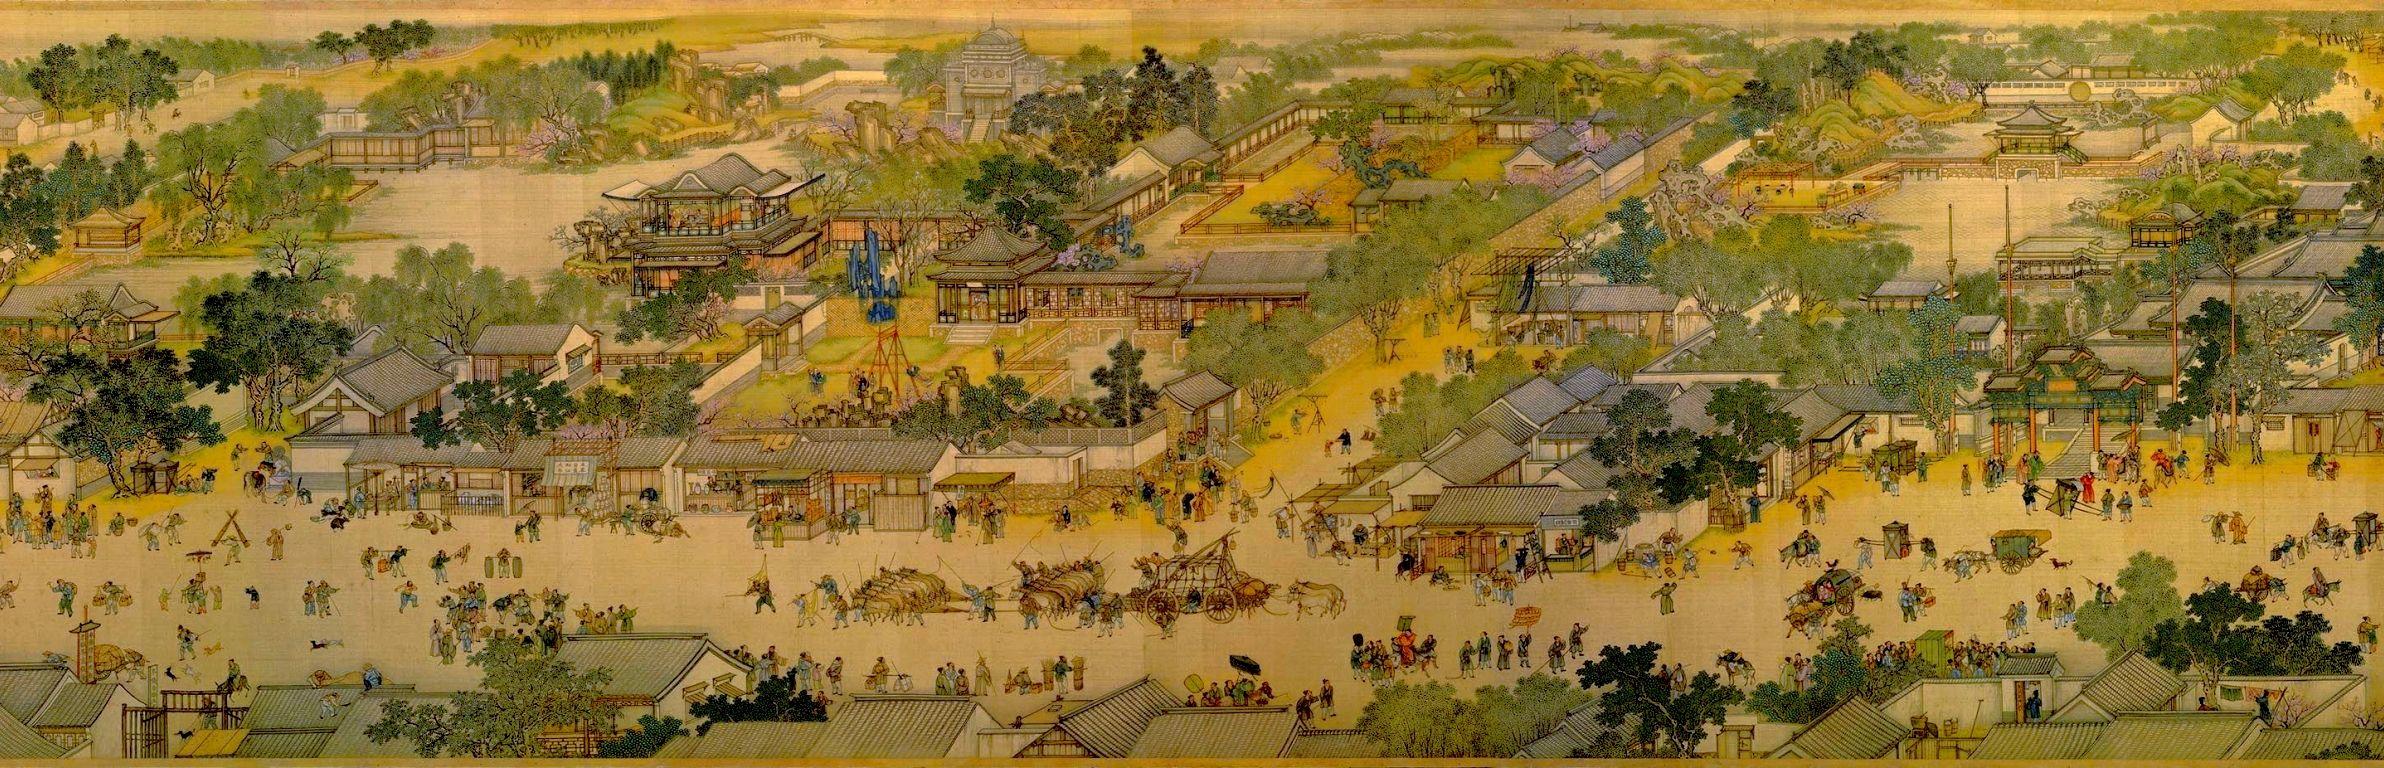 Qing Ming Shang He Tu. Imperial China. Art, China art, Abstract